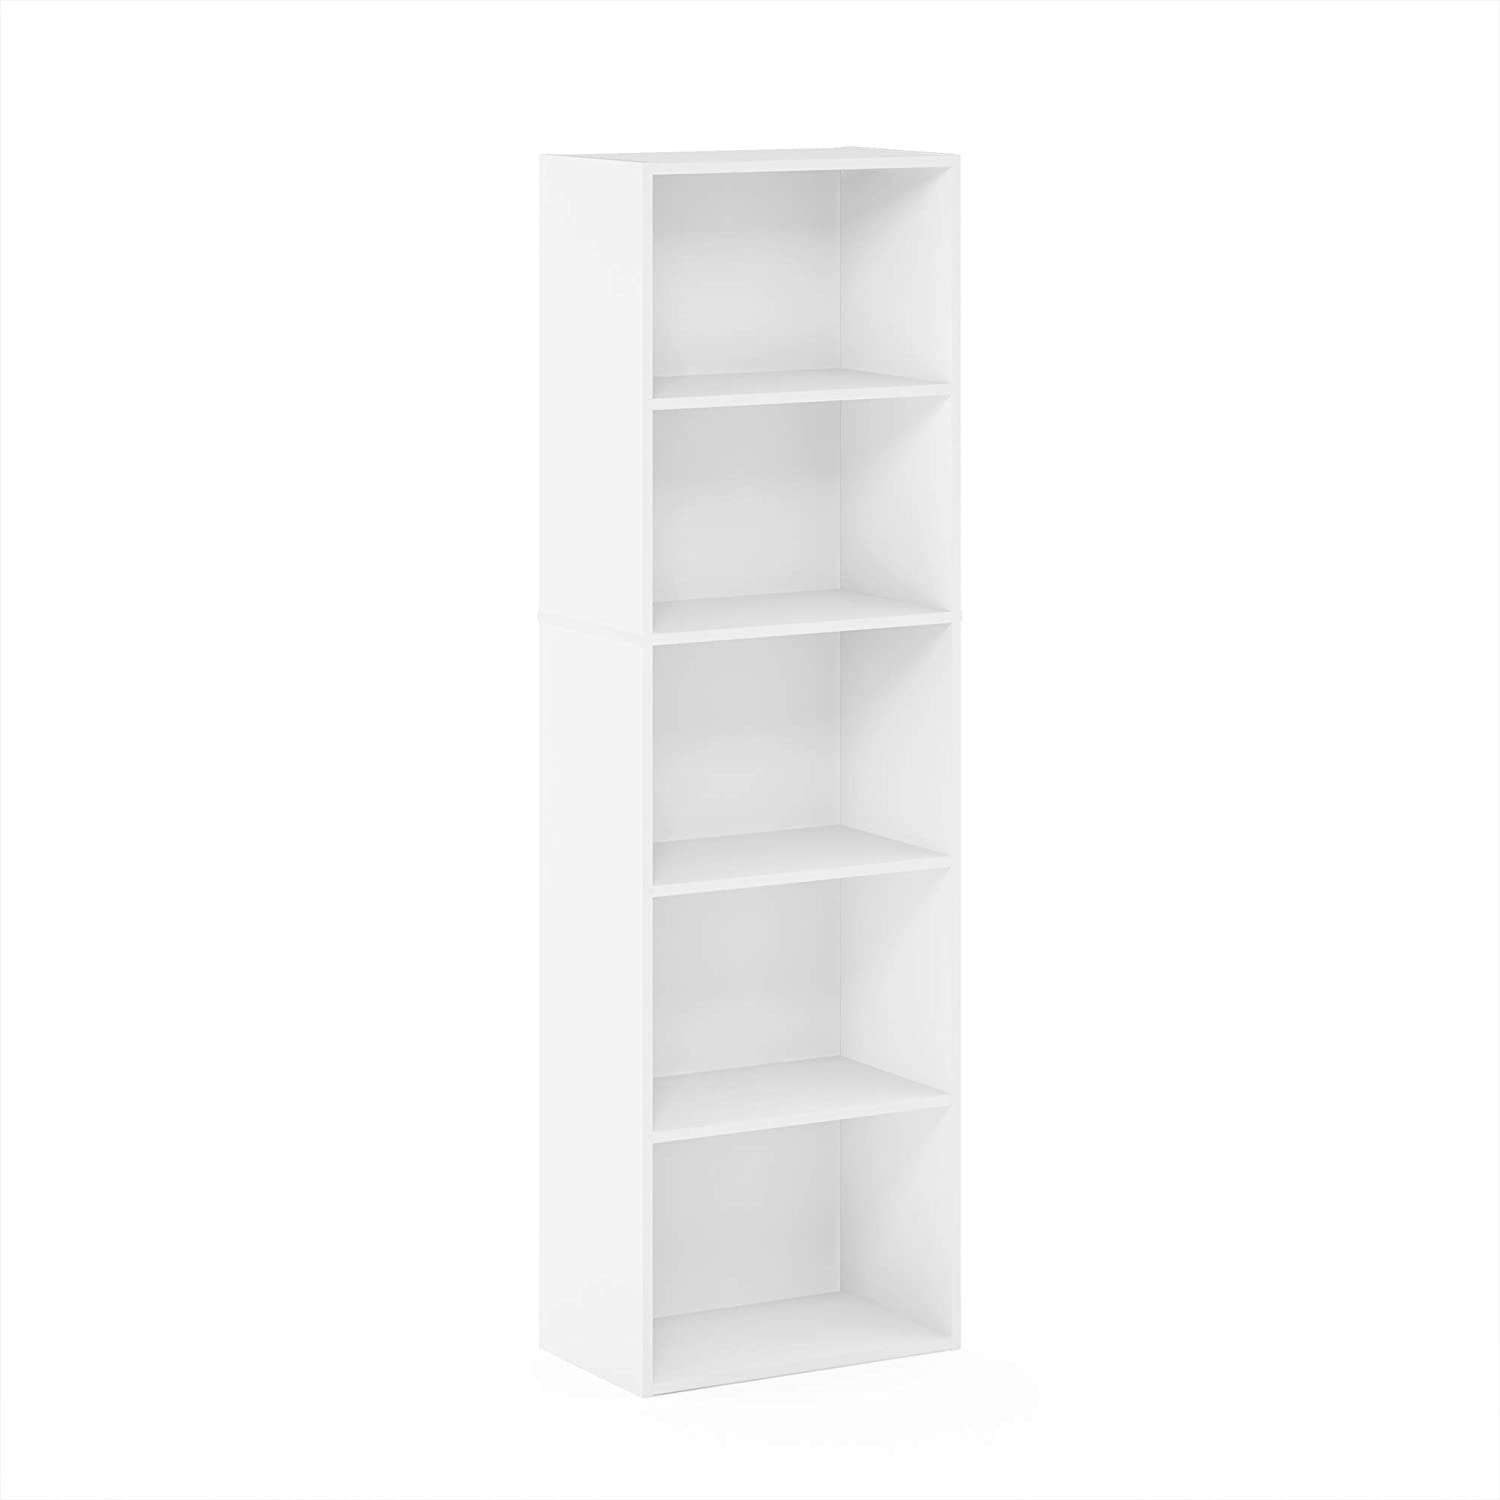 Furinno 5-Tier Reversible Color Open Shelf Bookcase, White